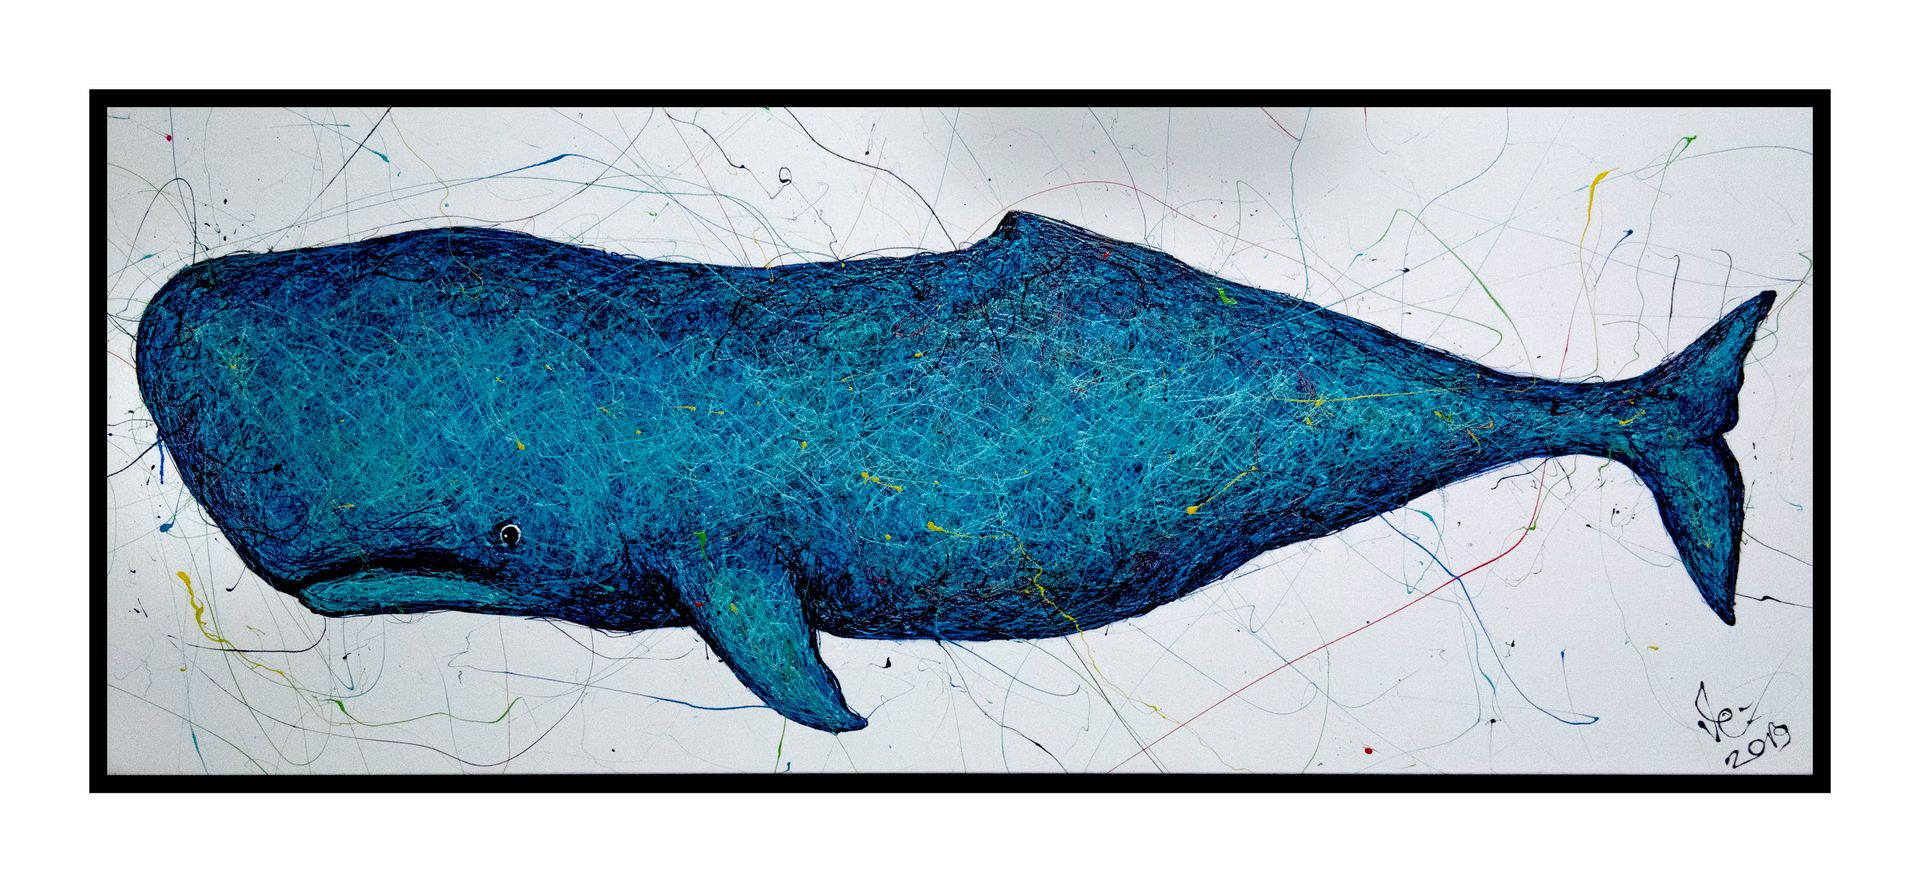 PIYA PIYA
"Blue whale", 2019
Acrylique sur toile
200 x 90 cm